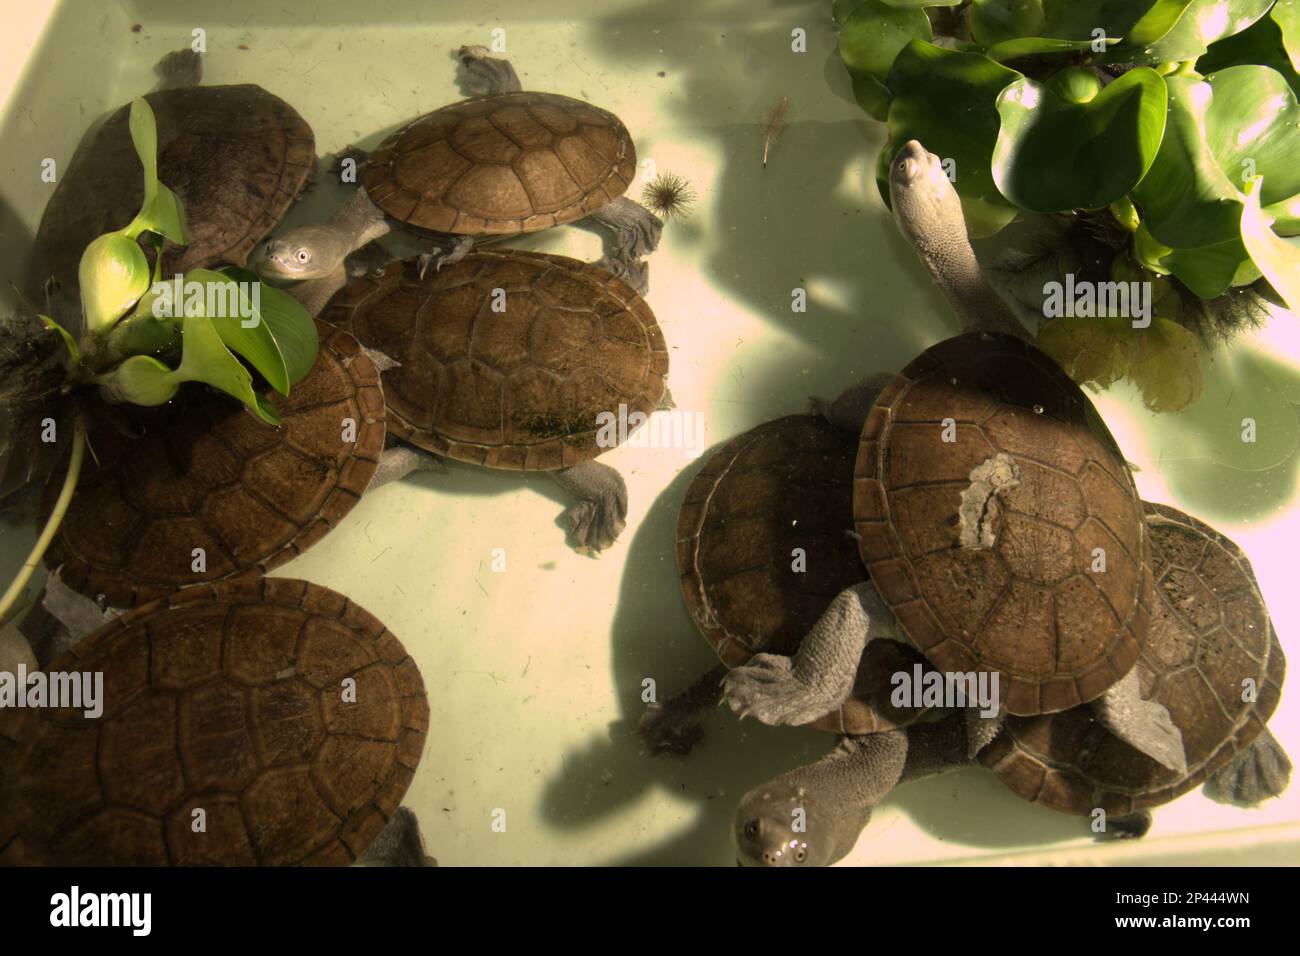 Süßwasserschildkröten, die vom Aussterben bedroht sind (kritisch gefährdet) und in einer lizenzierten Ex-situ-Wildtierzuchteinrichtung in Jakarta endemisch sind auf der indonesischen Rote-Insel, den Schlangenhalsschildkröten (Chelodina mcccordi). Stockfoto